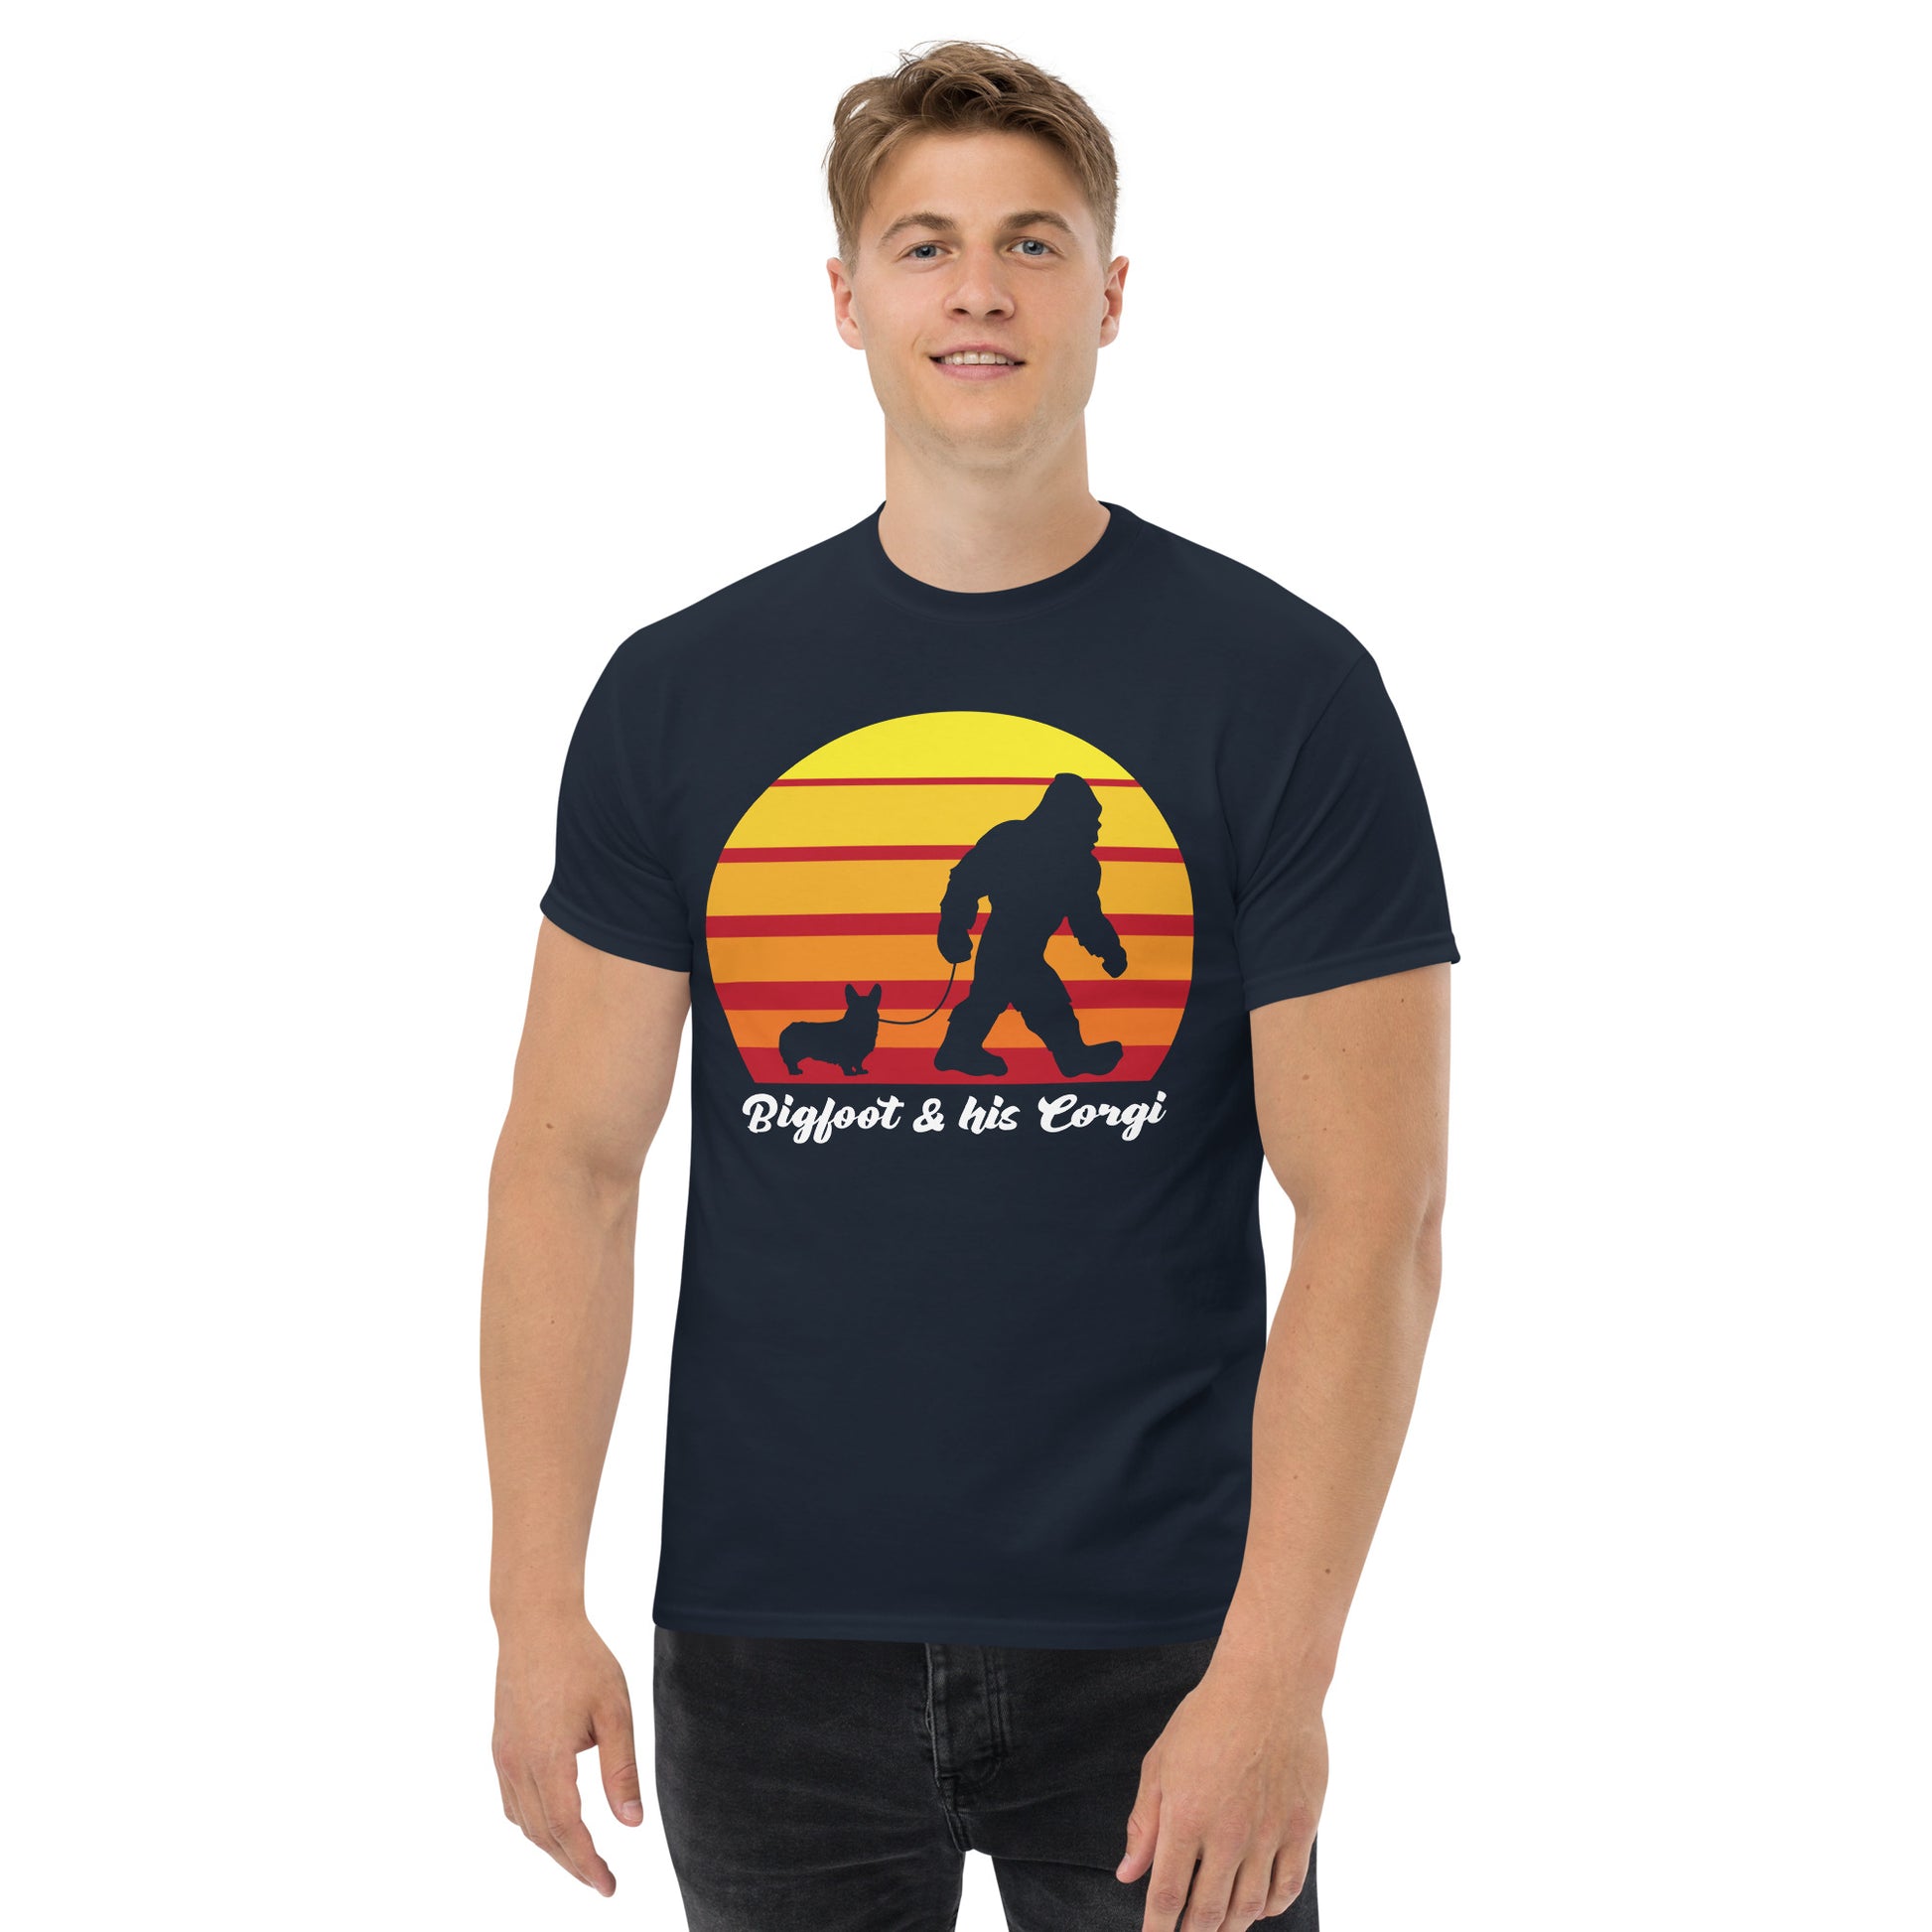 Big foot and his Corgi men’s navy t-shirt by Dog Artistry.